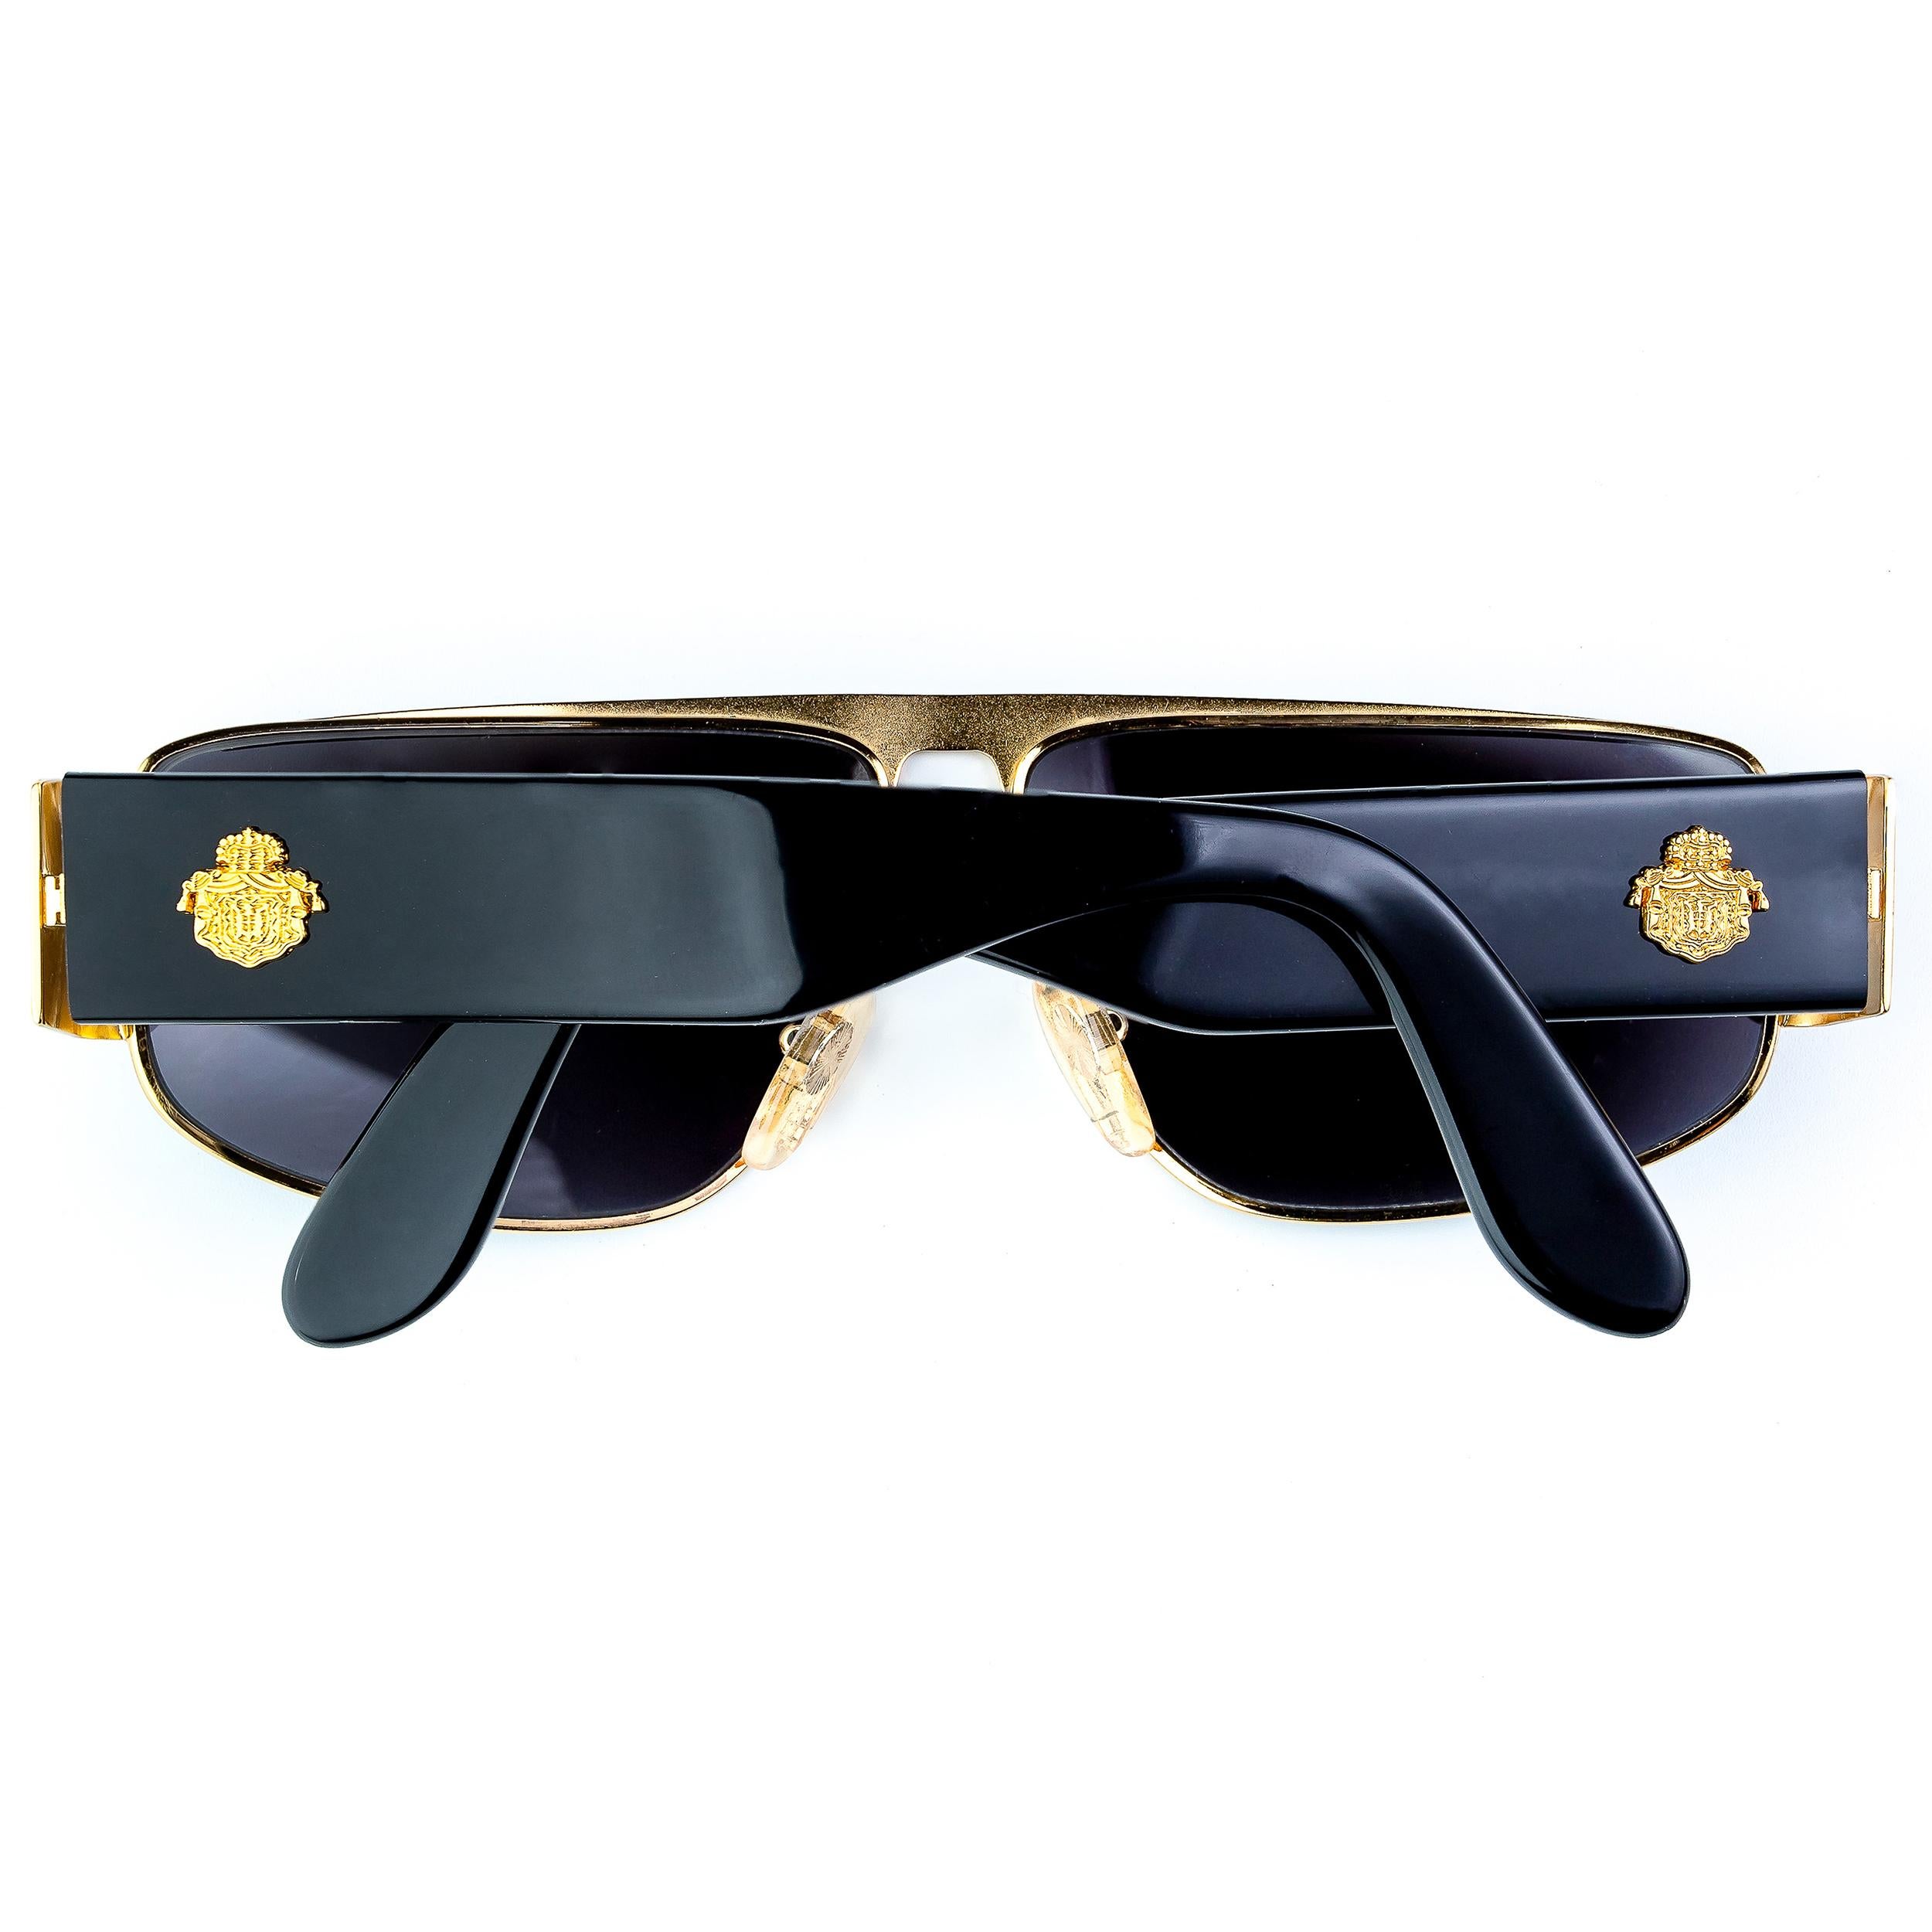 1980s aviator sunglasses